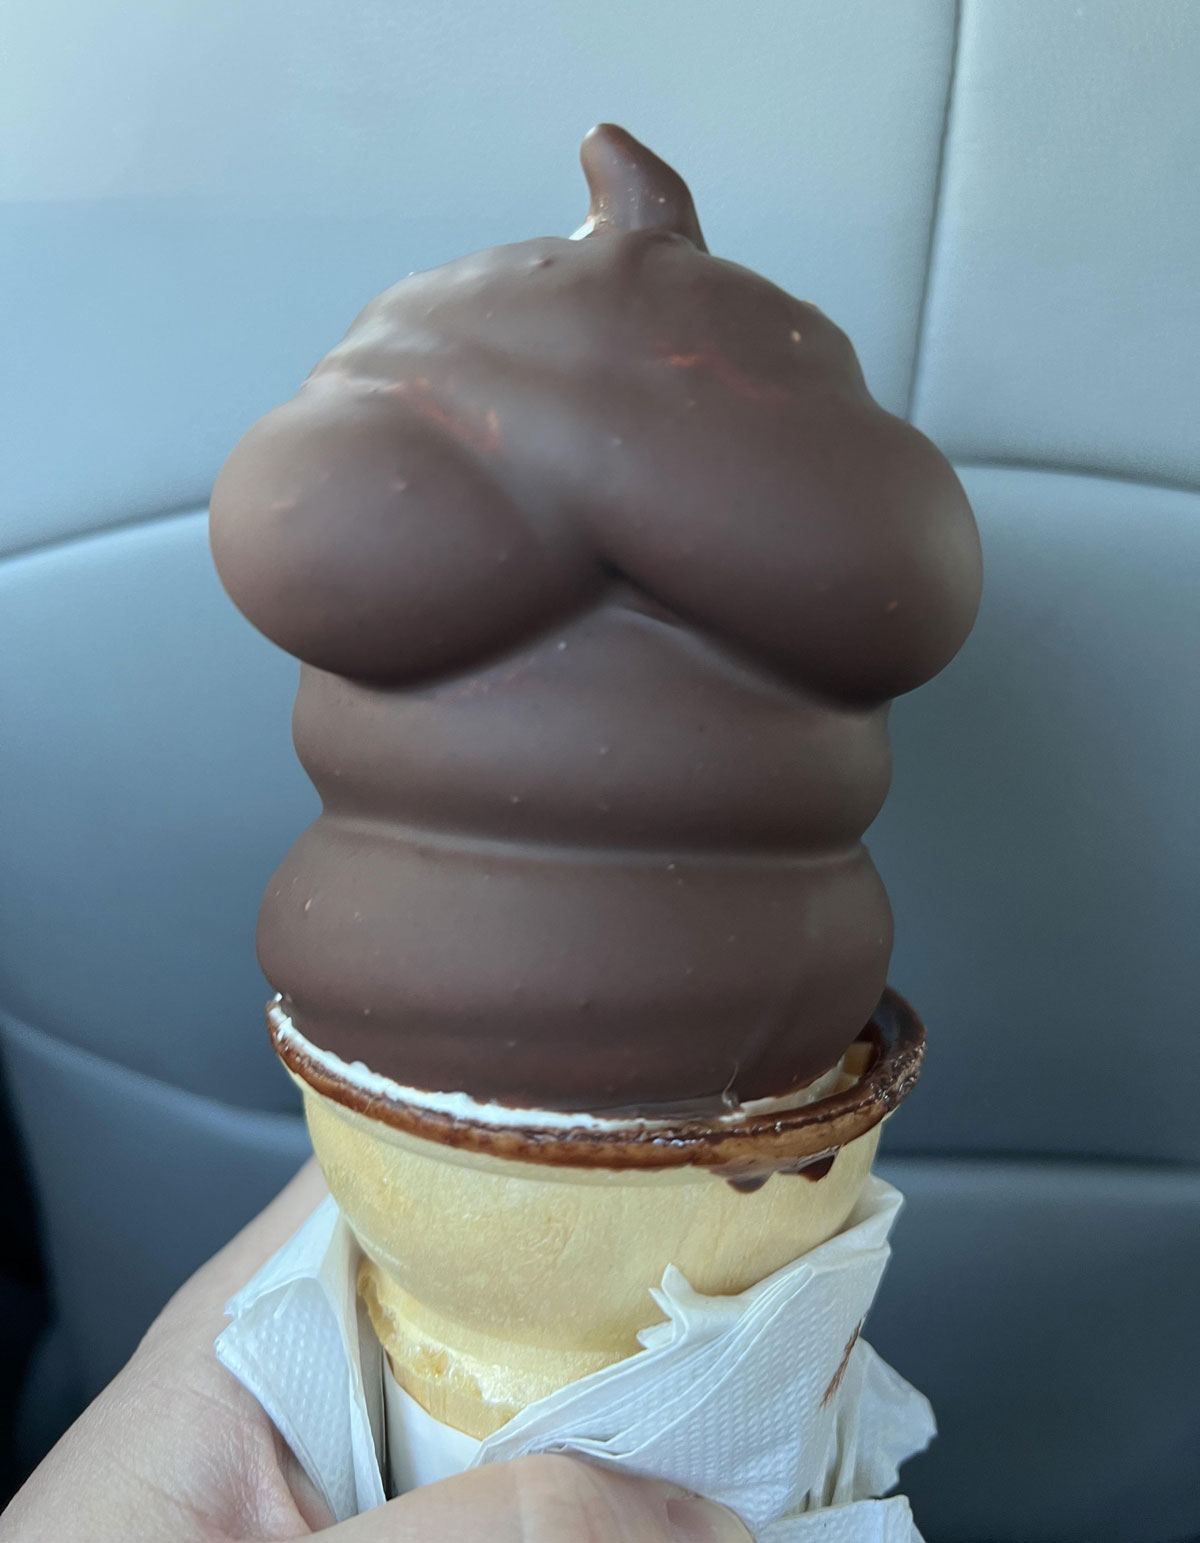 This ice cream cone I got...